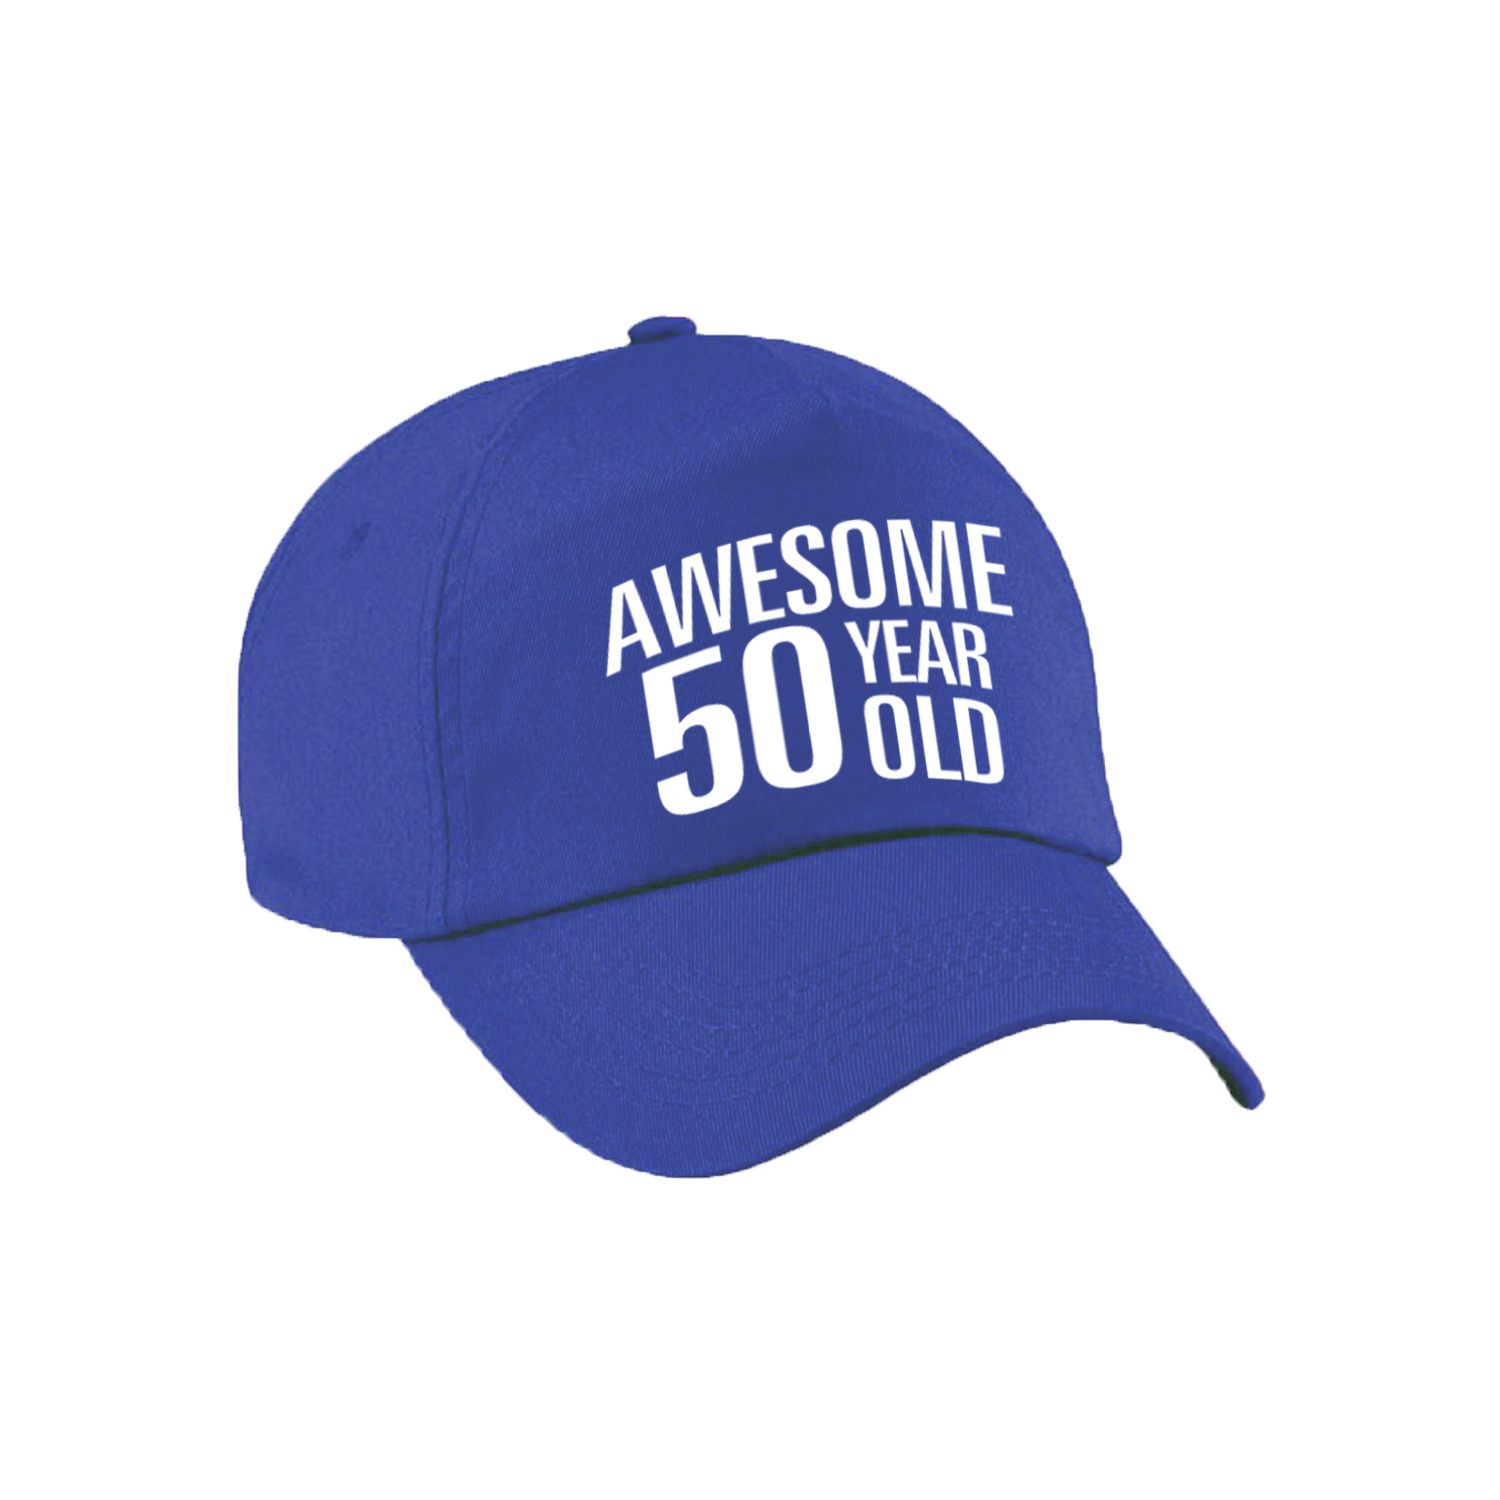 Awesome 50 year old verjaardag pet-cap blauw voor dames en heren